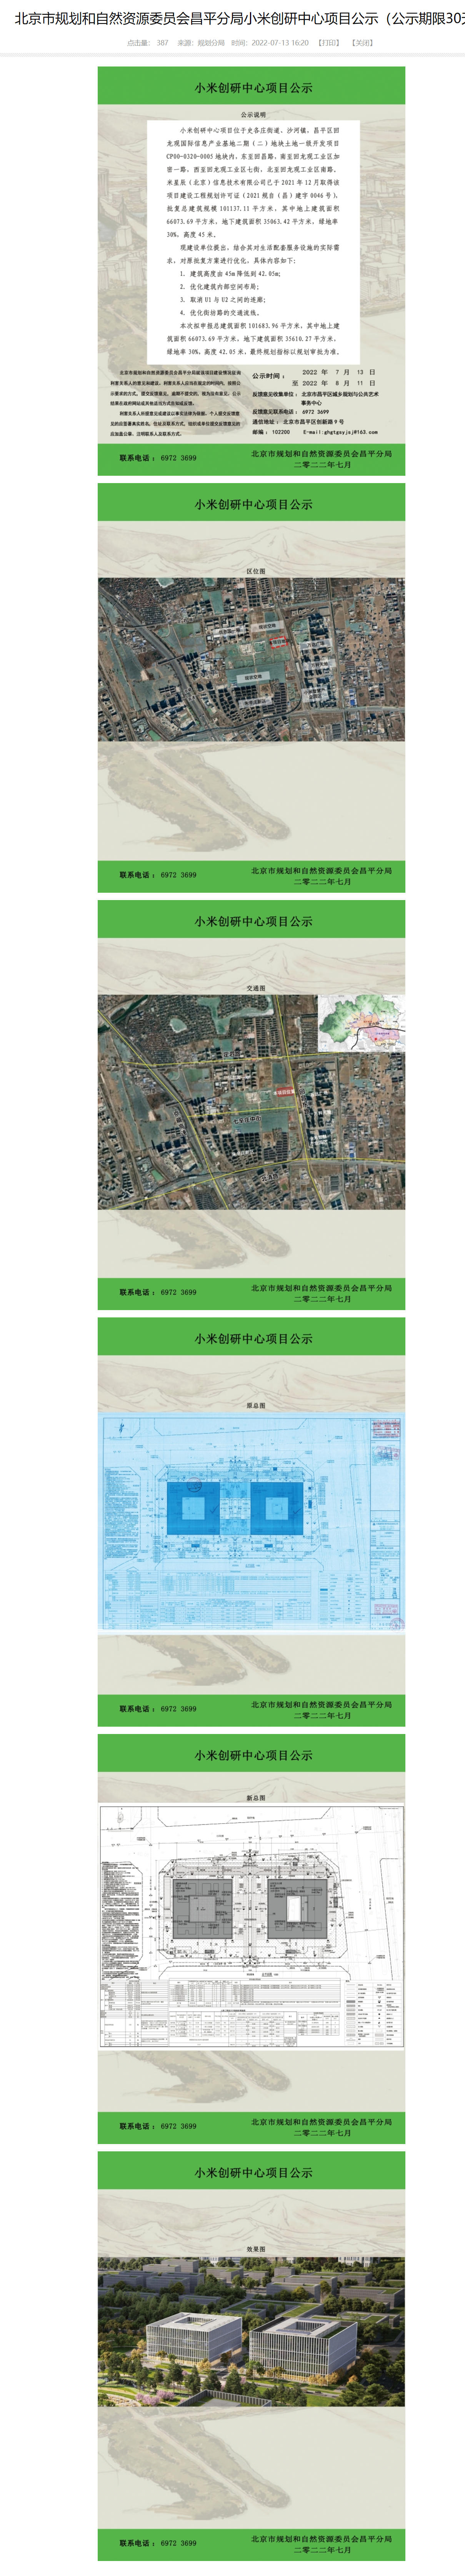 北京昌平小米创研中心和未来产业园项目建设规划公示